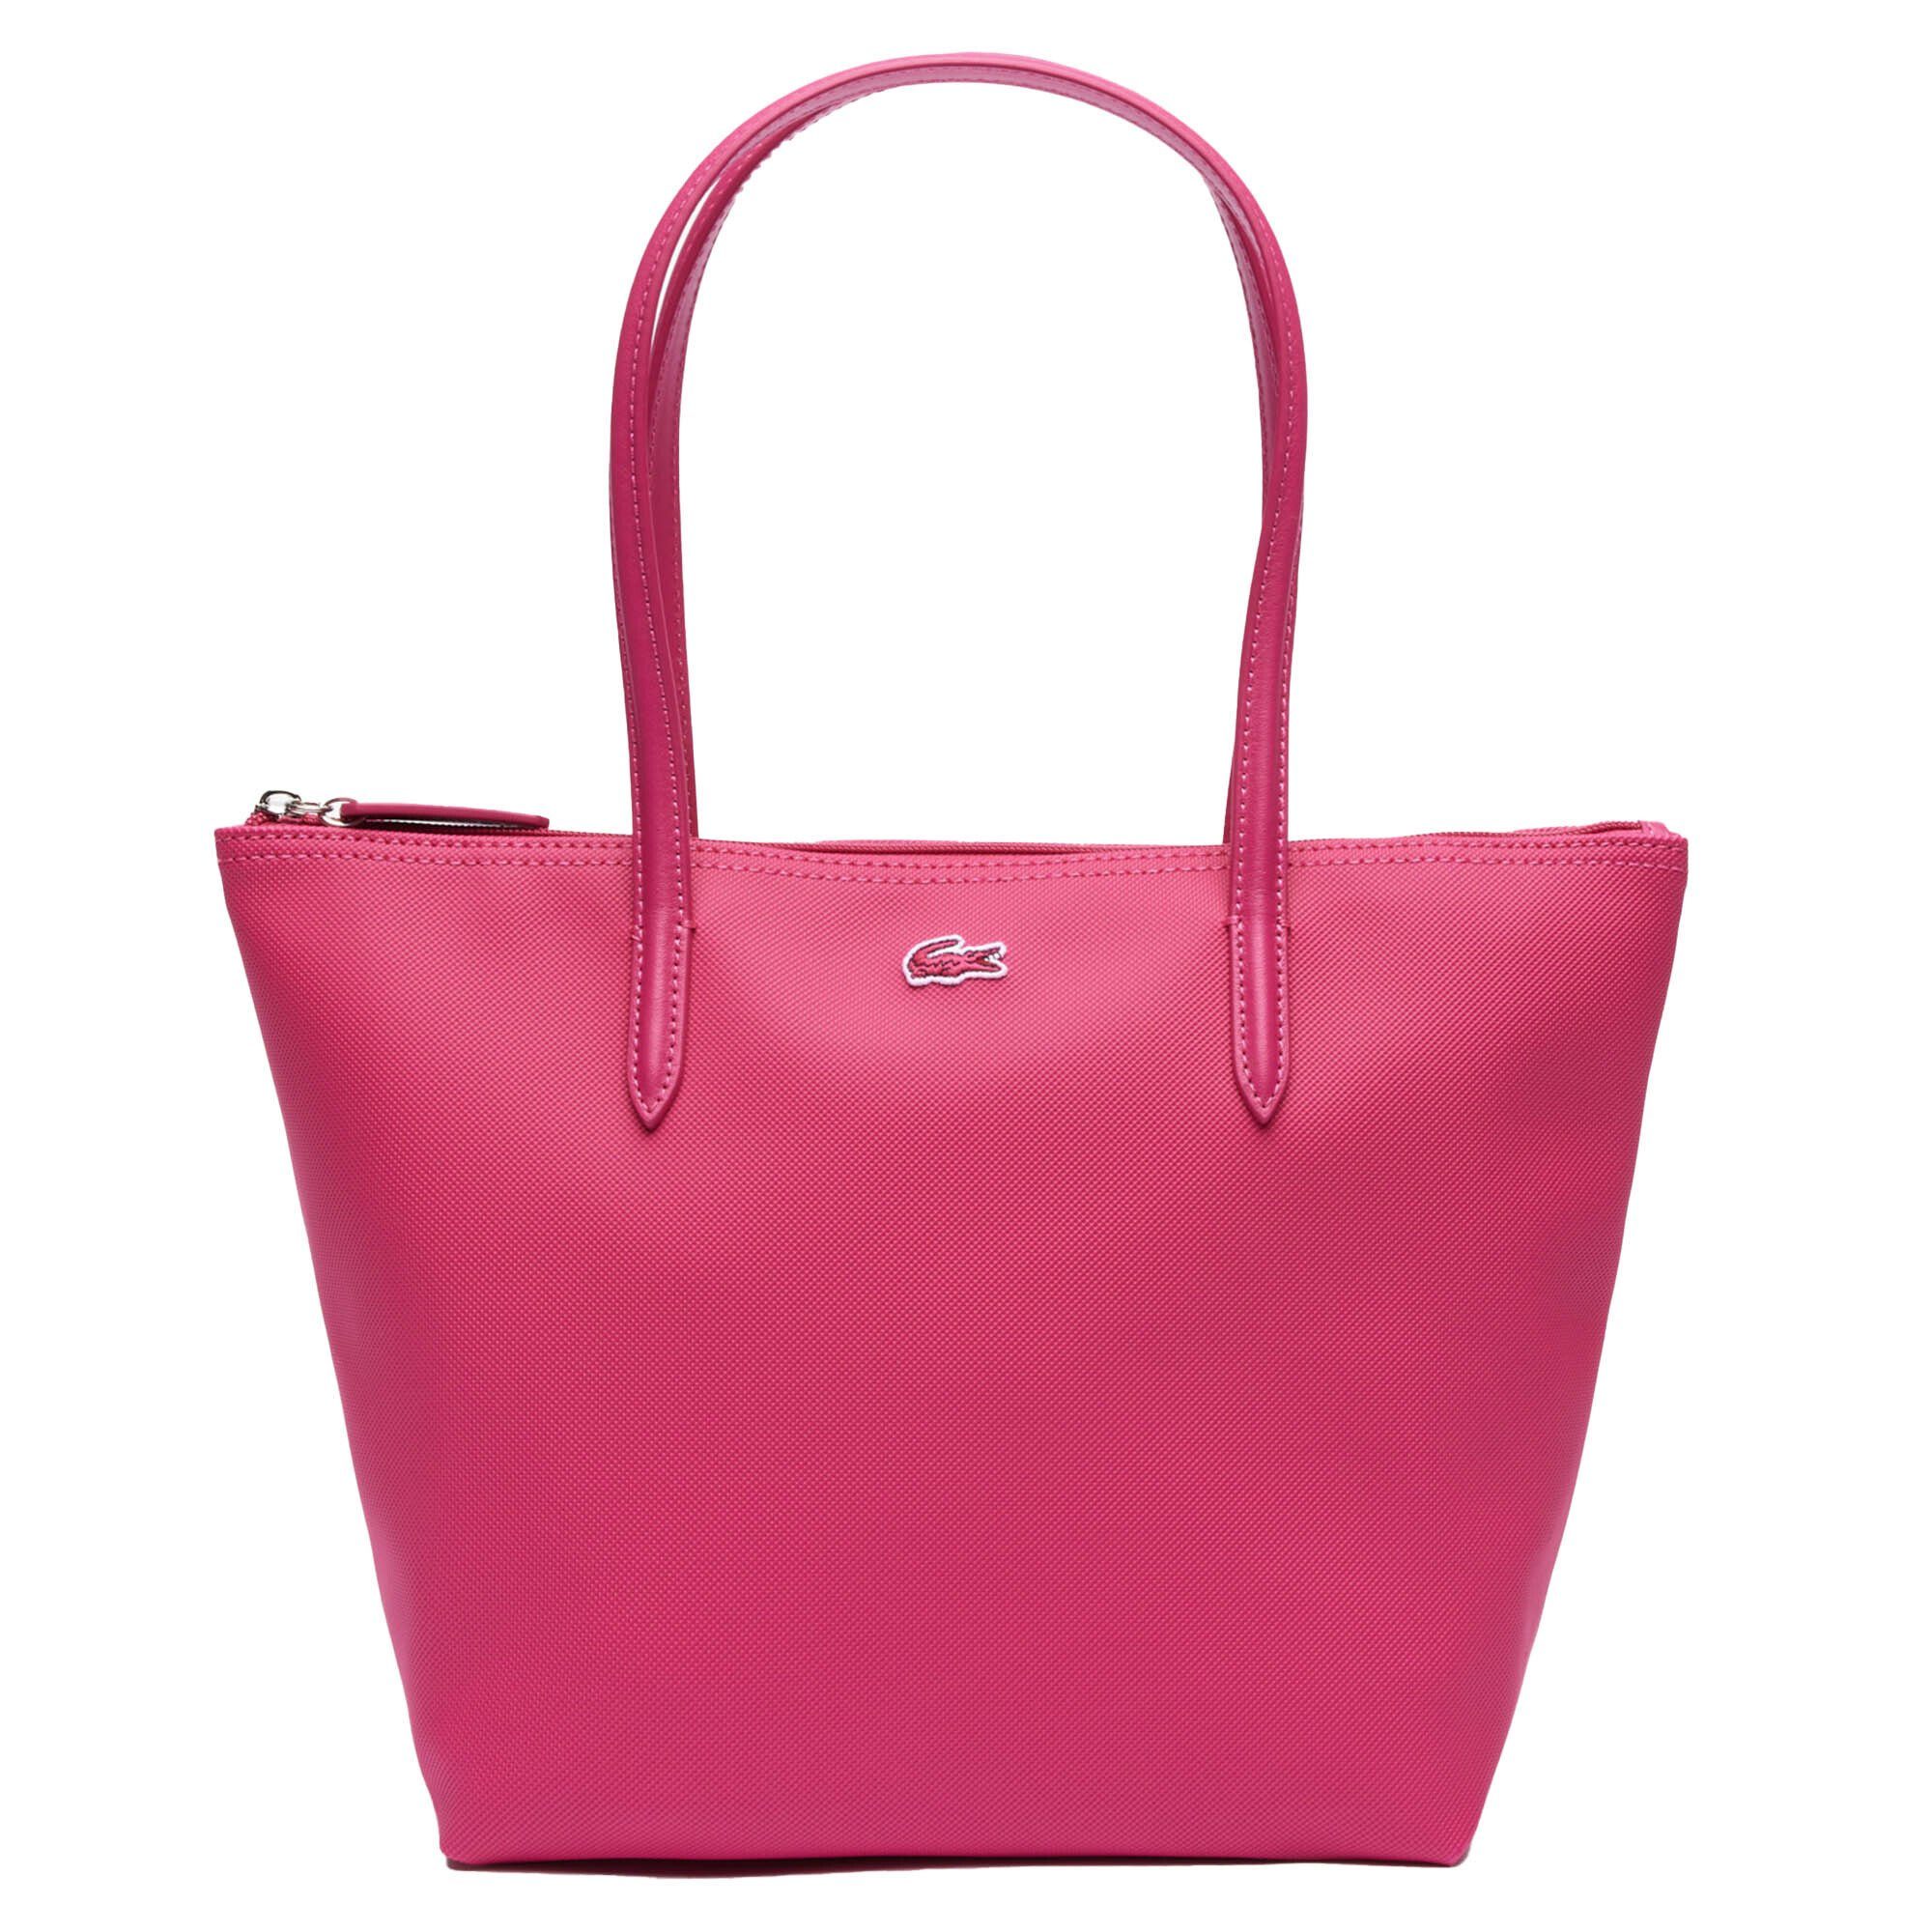 Lacoste Pink Henkeltasche (Spinelle) Damen Handtasche mit Reißverschluss